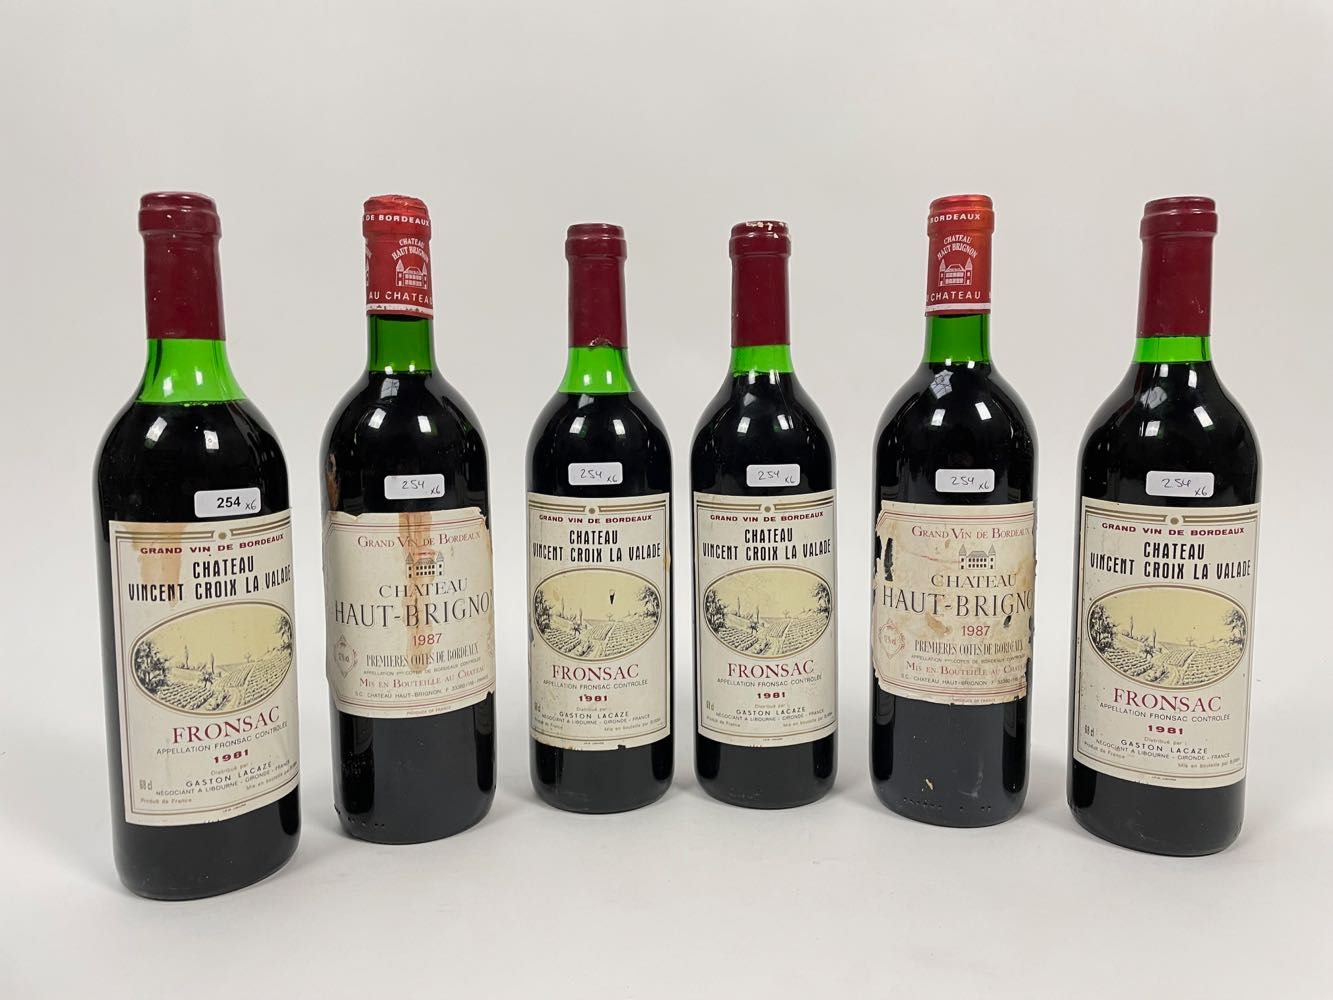 BORDEAUX Lote de seis botellas (rojo):
- (FRONSAC), Château Vincent-Croix-la-Val&hellip;